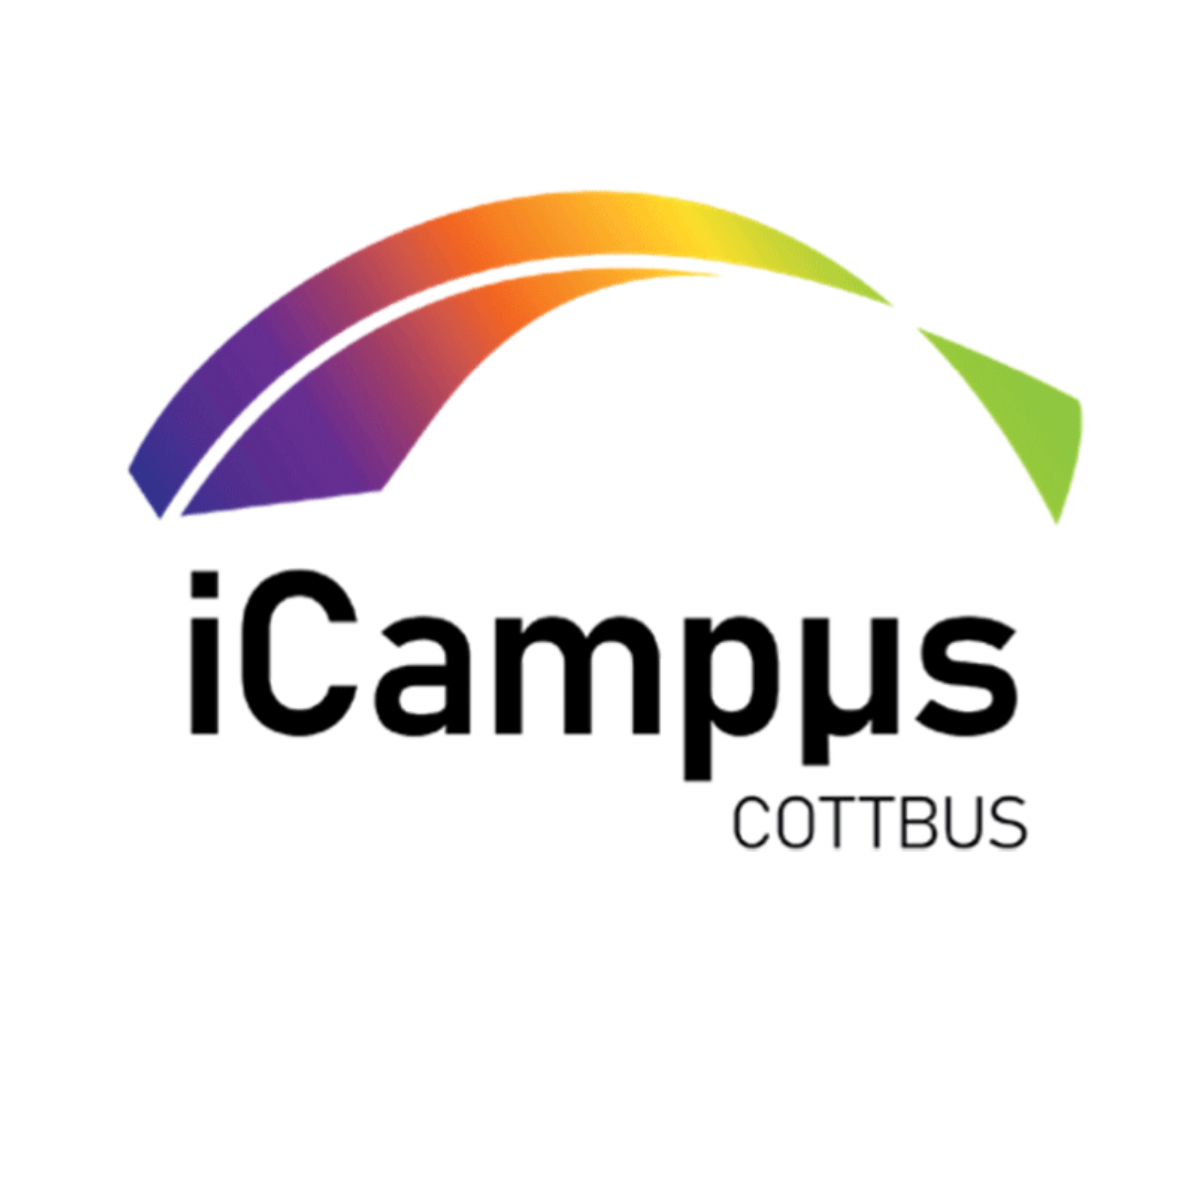 iCampus teaser image